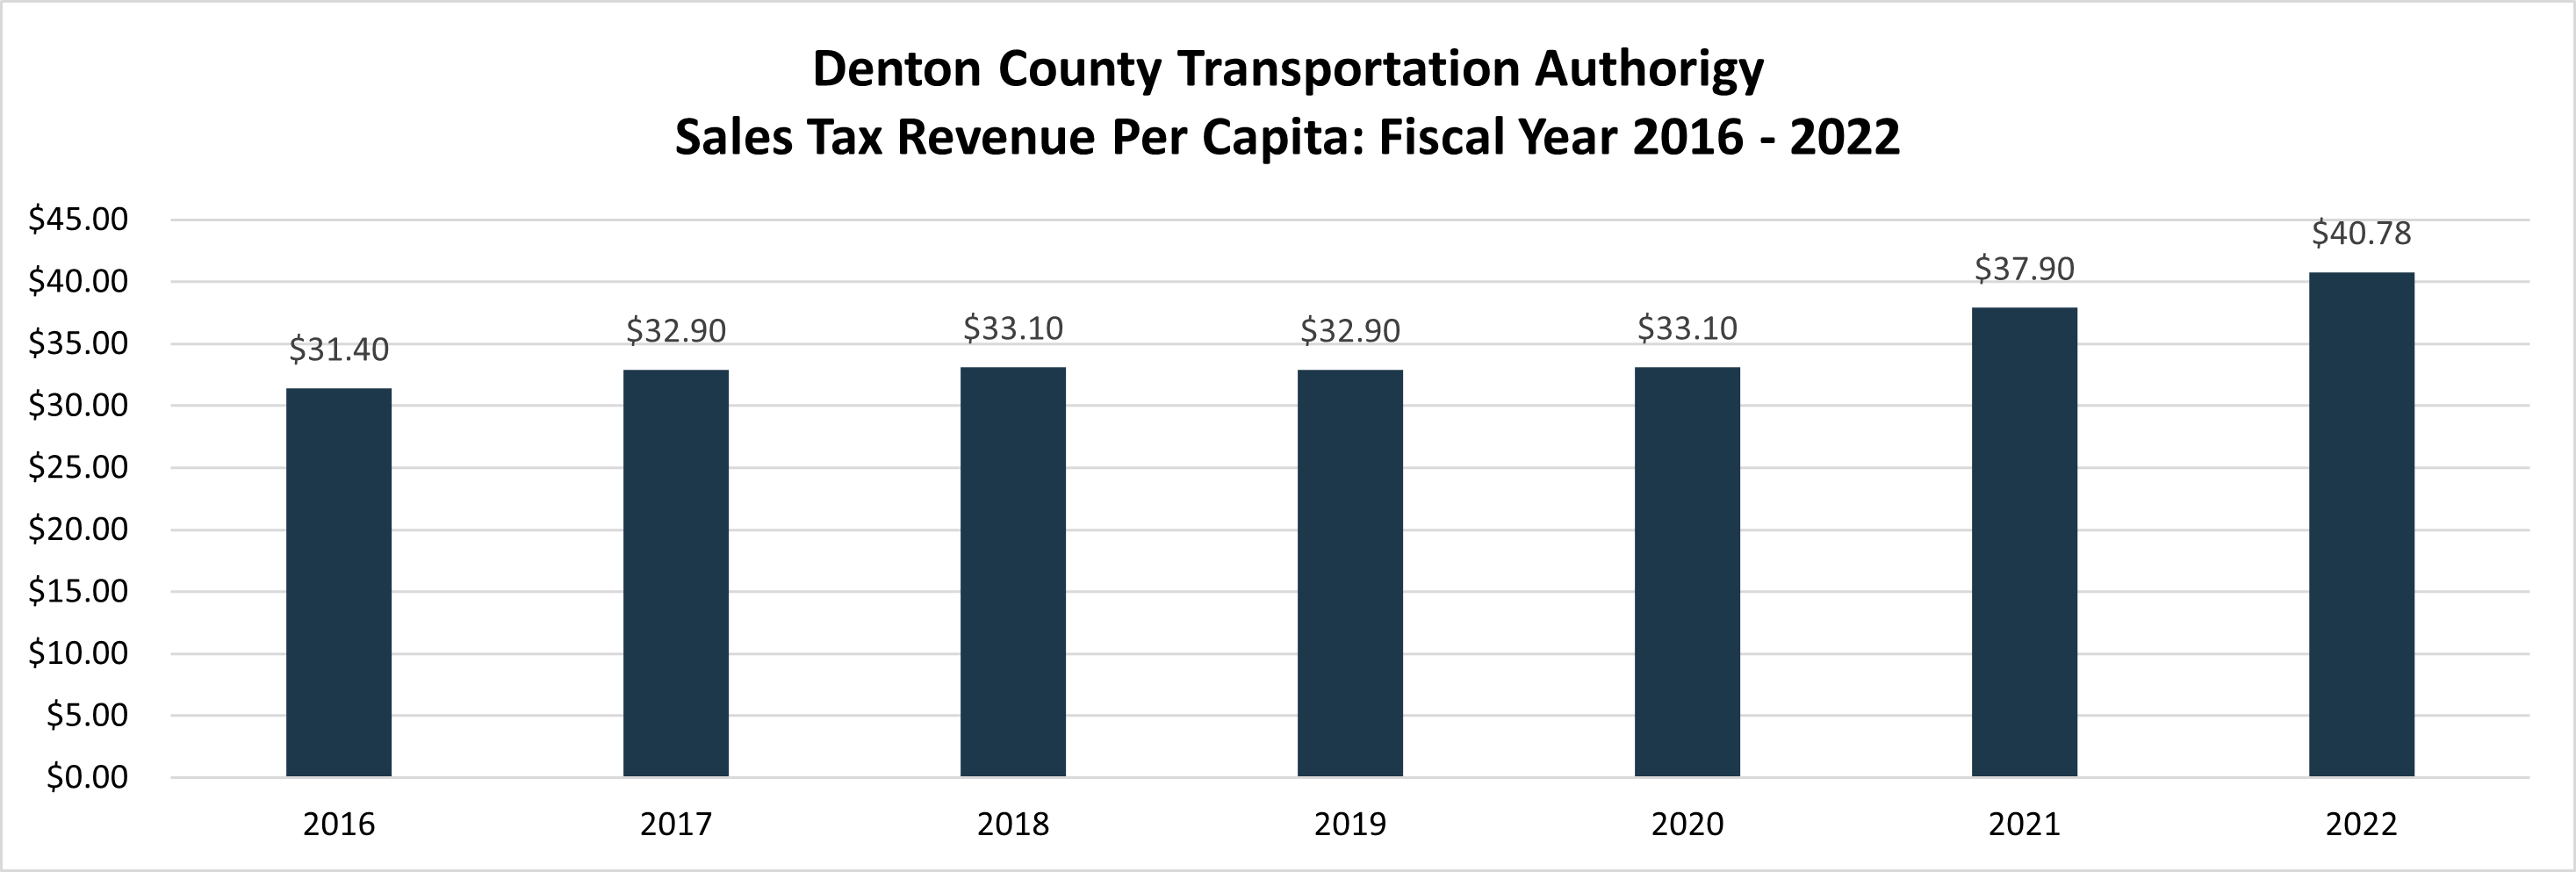 DCTA Sales Tax Revenue per capita 2016 to 2022